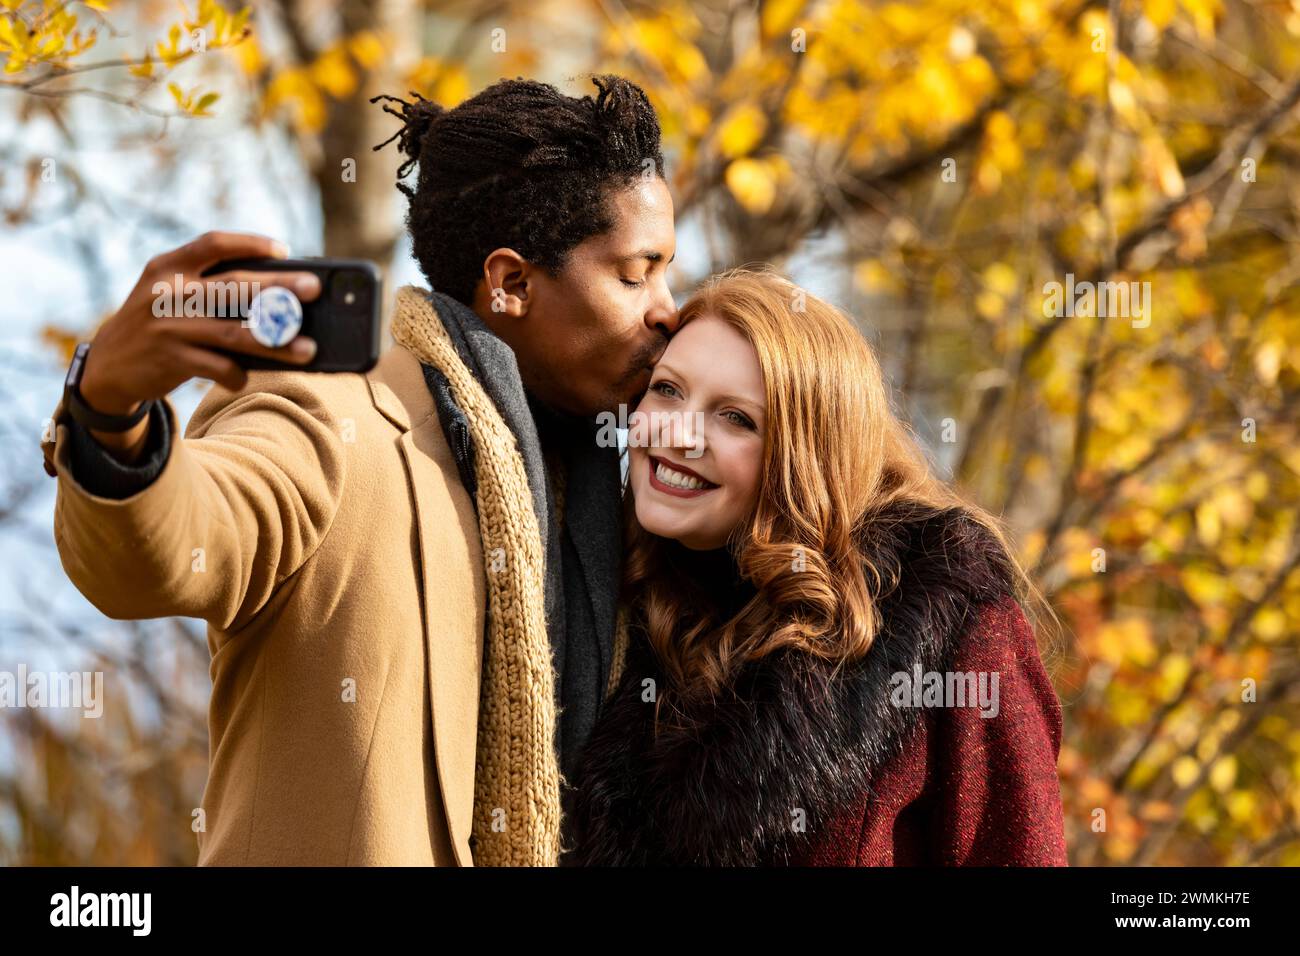 Nahaufnahme eines gemischten Rassenpaares, das zusammen ein Selfie macht, Ehemann küsst Ehefrau auf die Stirn, während sie die Handykamera anlächelt, während sie... Stockfoto